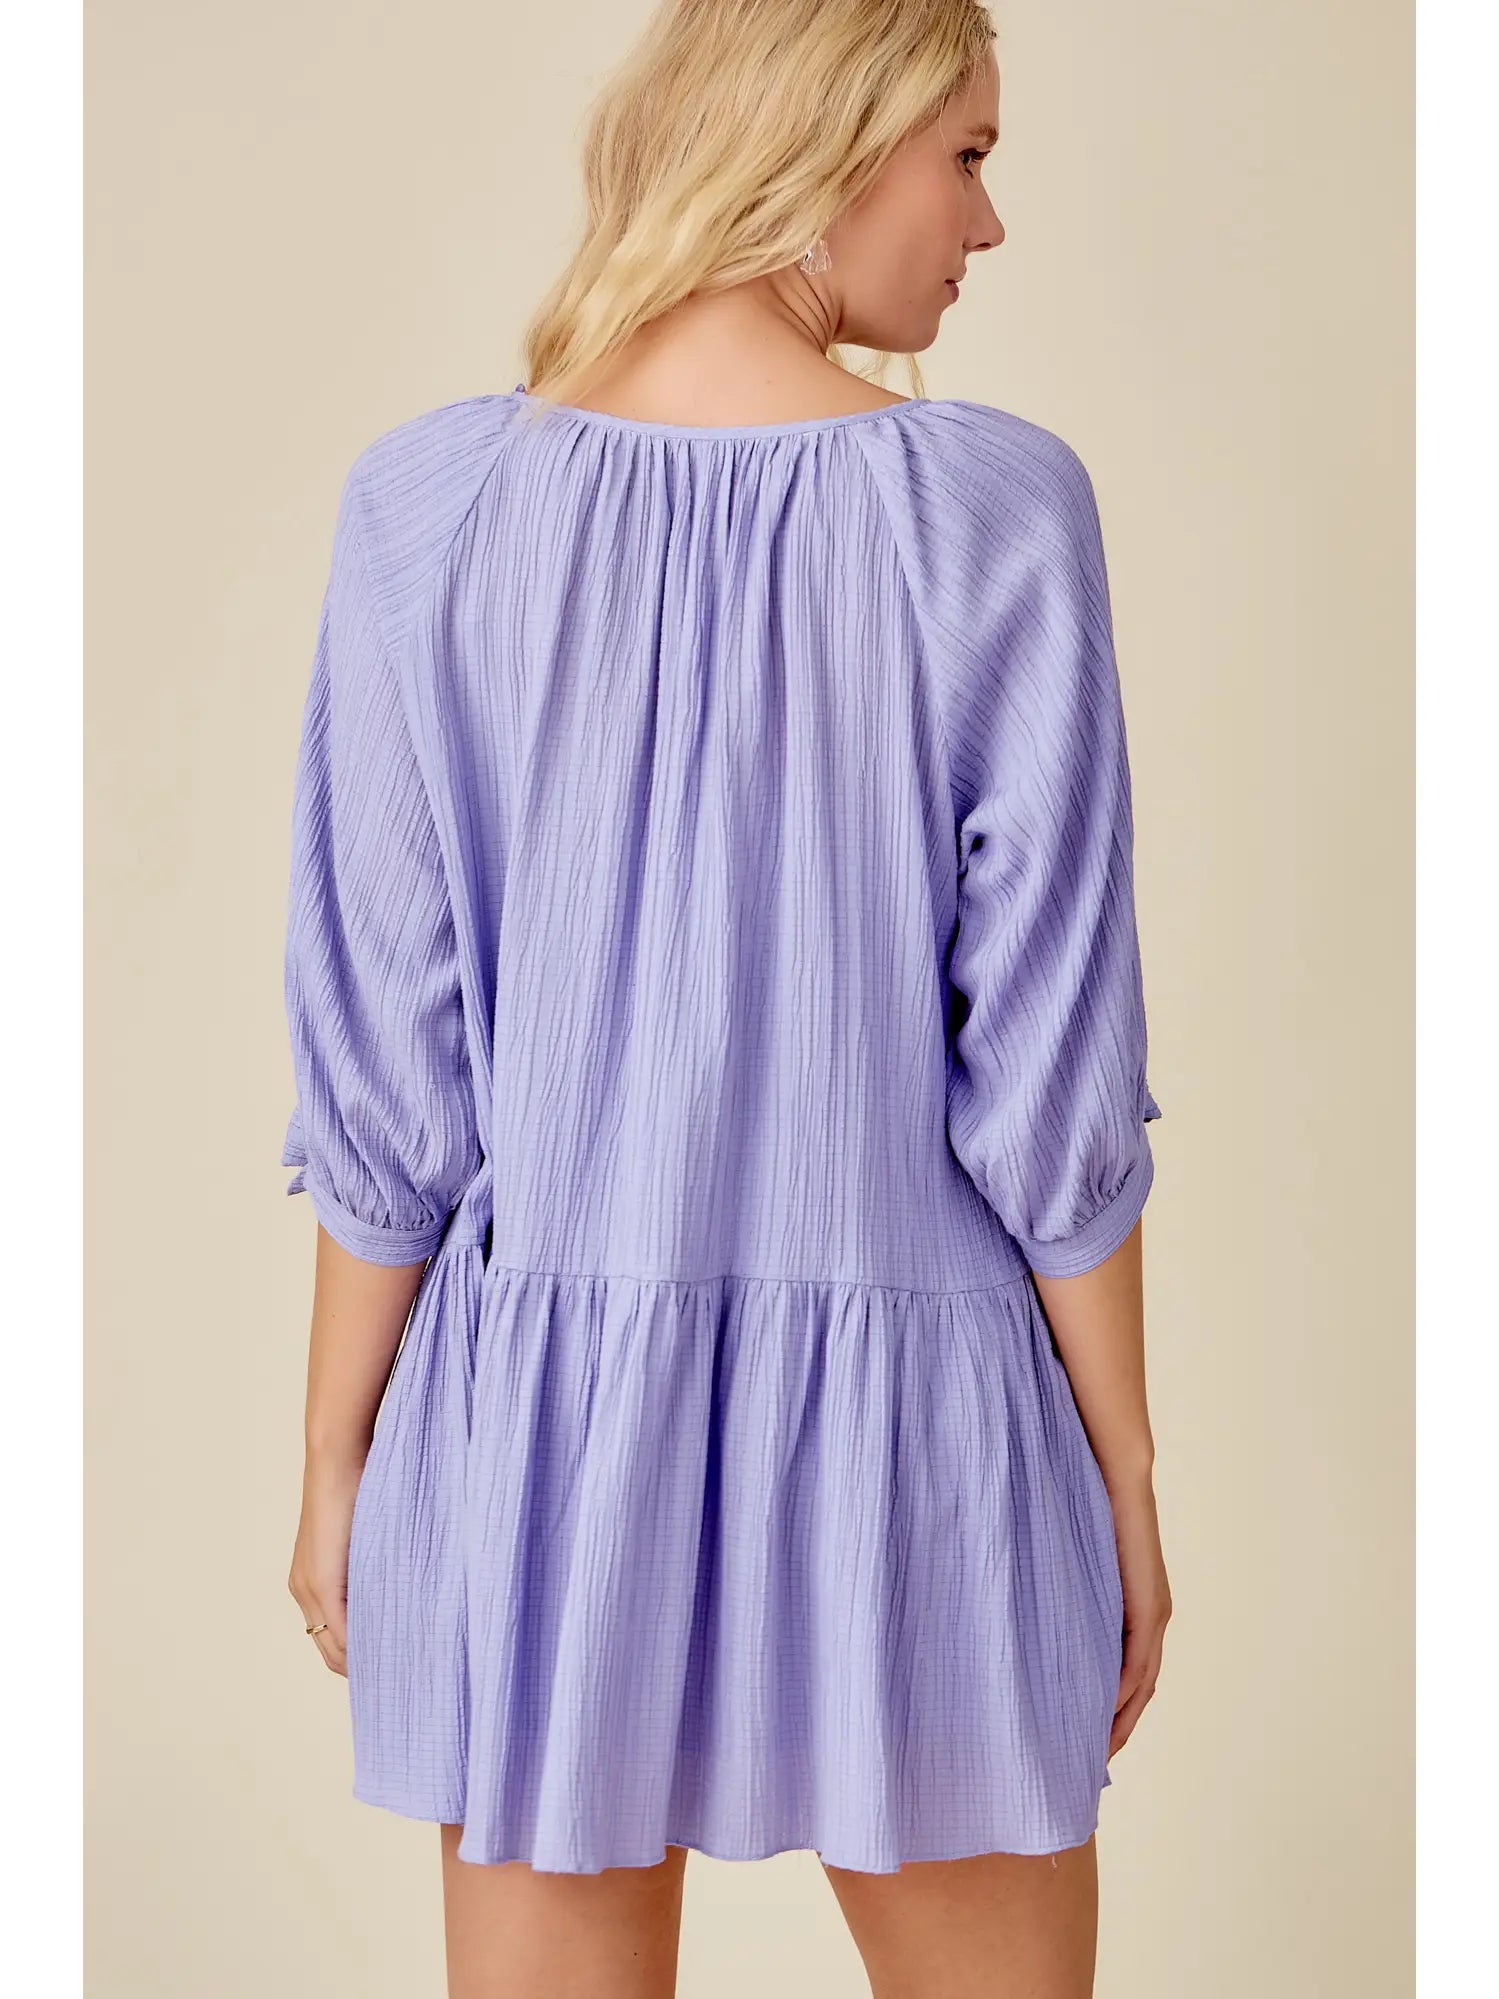 Crinkle Tie Sleeve Dress - Lavender